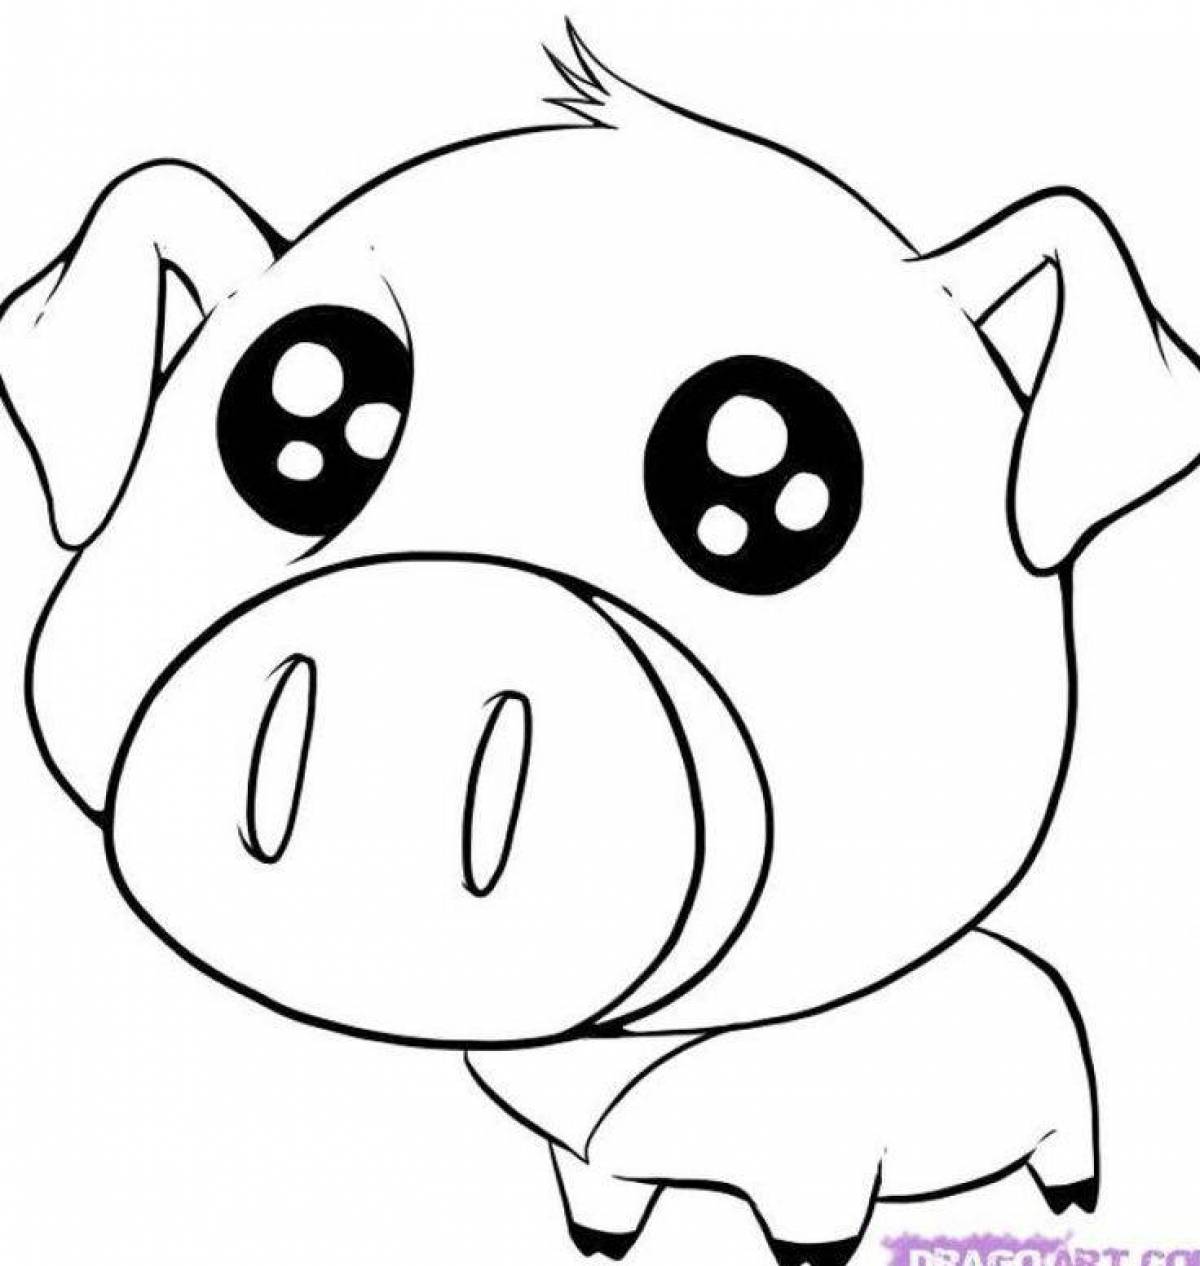 Snuggable coloring page piggy